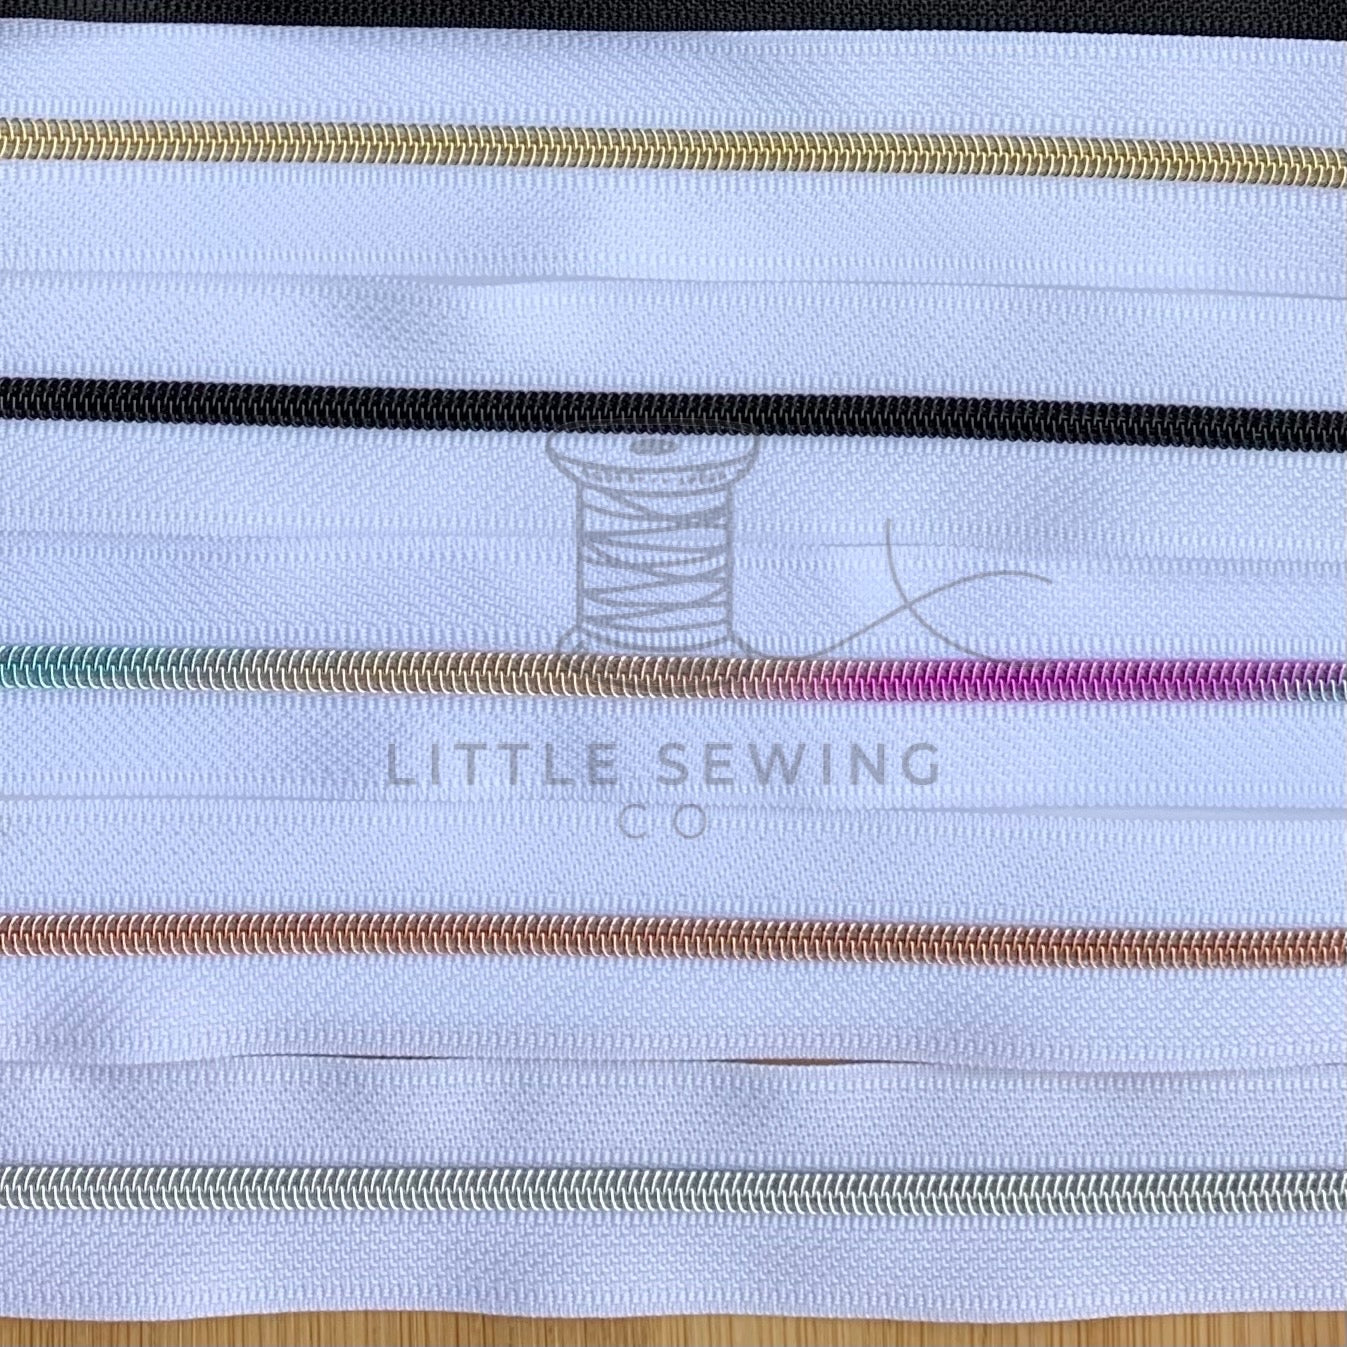 Little Sewing Co Zipper Pulls